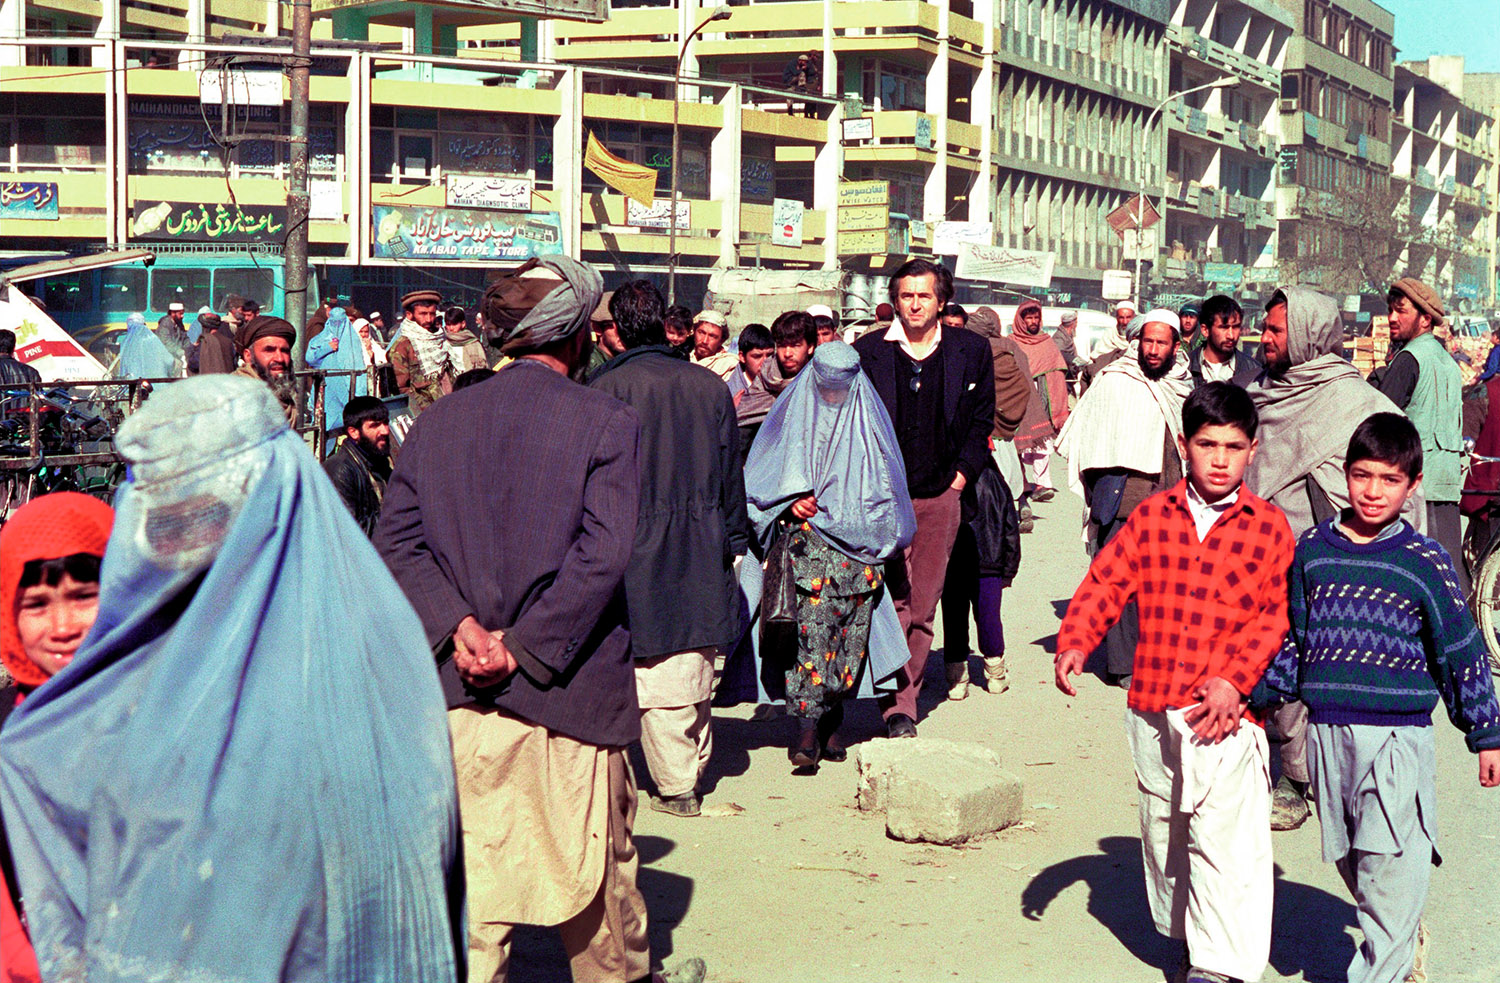 Bernard-Henri Lévy marche dans les rues de Kaboul au milieu du peuple afghan. Les femmes portent des burquas